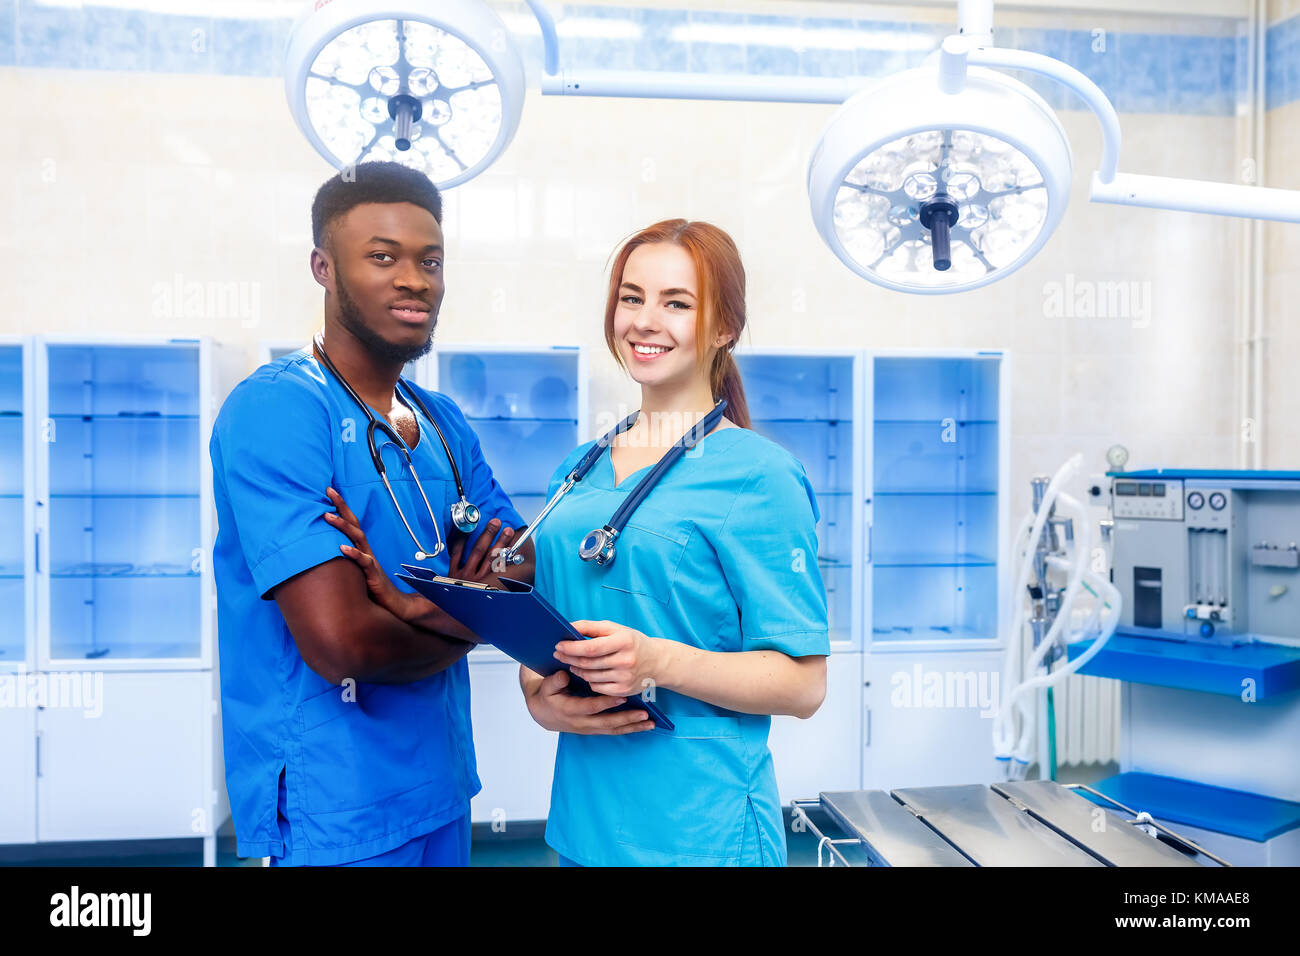 De l'équipe multiraciale de deux jeunes médecins dans un hôpital debout dans une chambre d'exploitation Banque D'Images